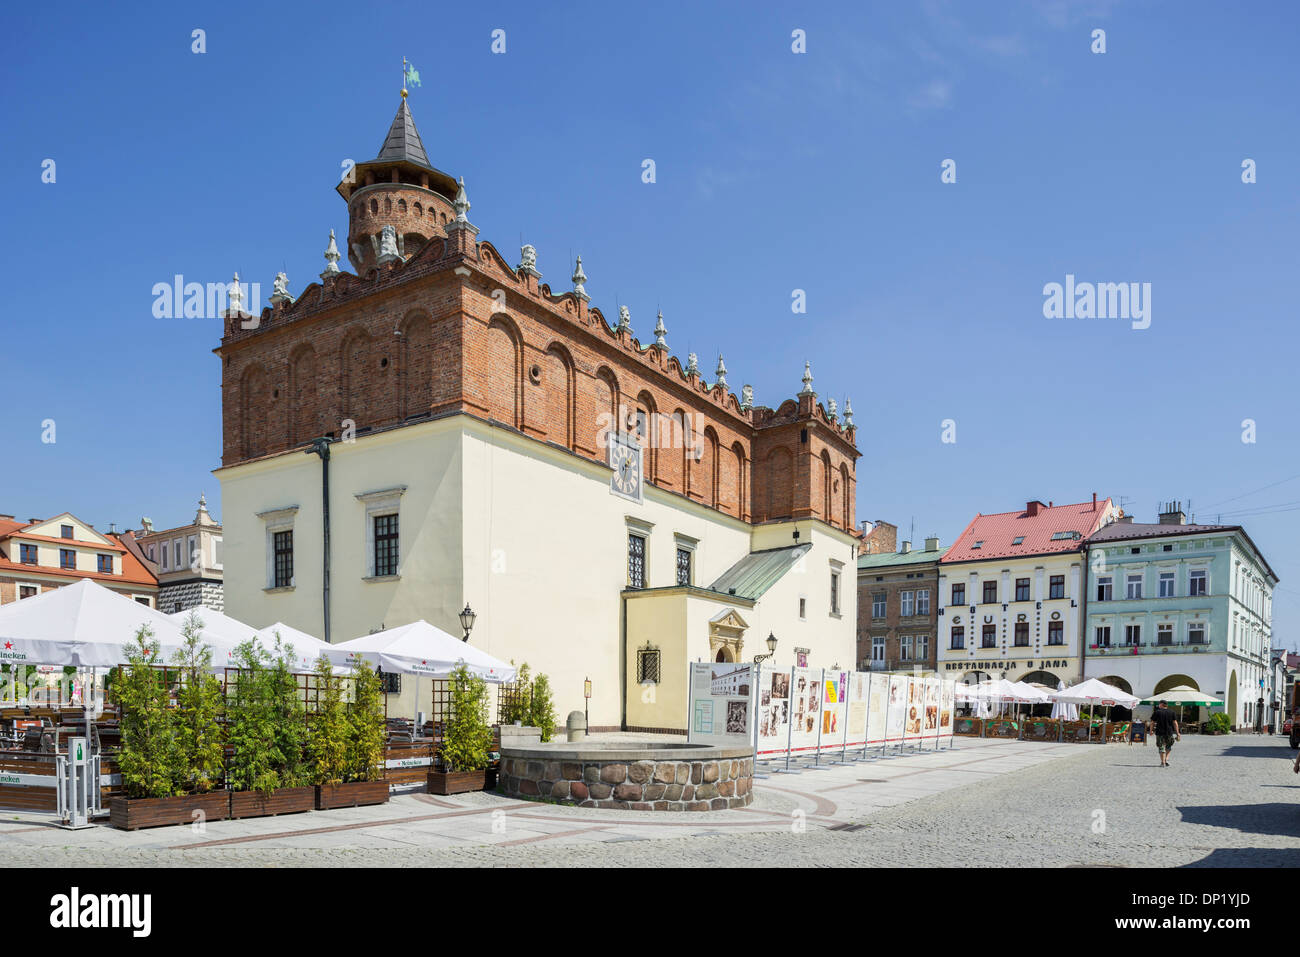 Gothic Town Hall on the market square, Tarnów, Lesser Poland Voivodeship, Poland Stock Photo